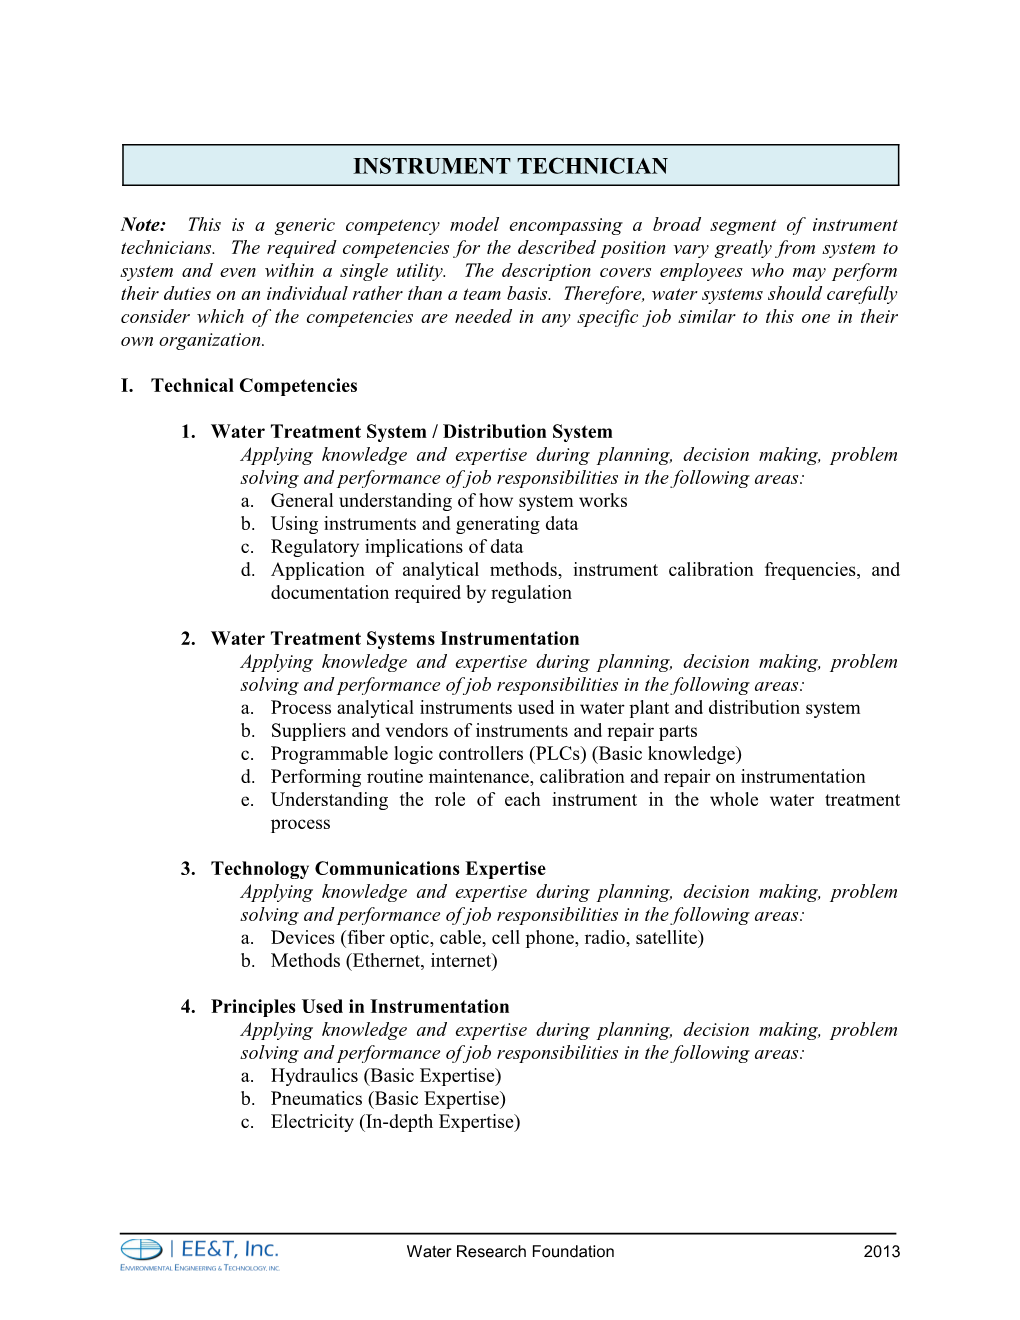 WRF Competency Model: Instrument Technicianpage1